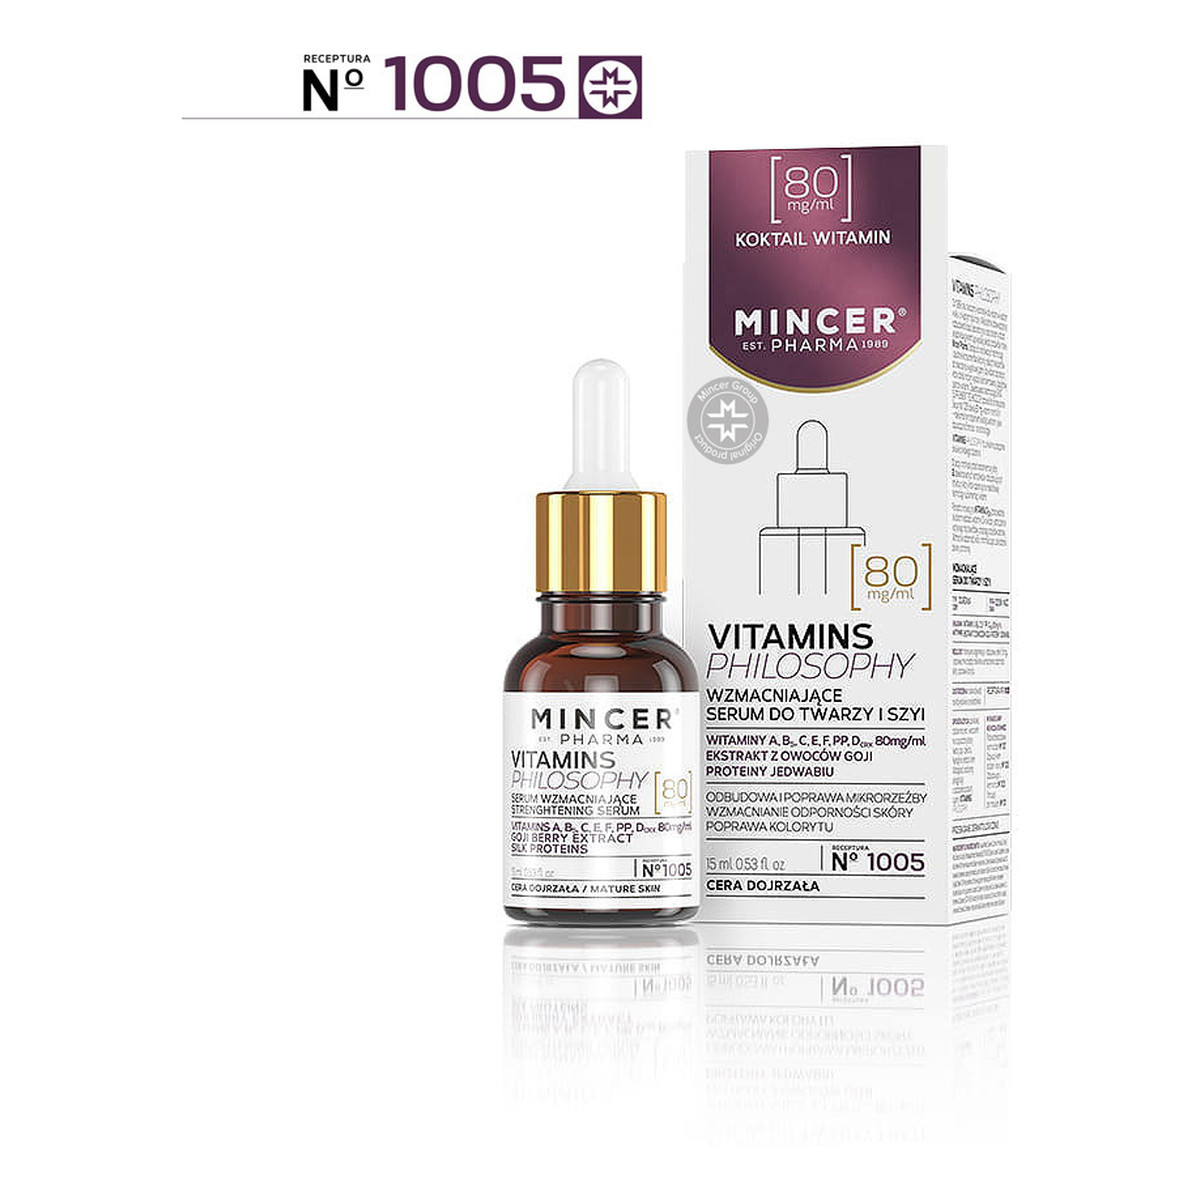 Mincer Pharma Vitamins Philosophy Serum wzmacniające do twarzy i szyi No 1005 15ml